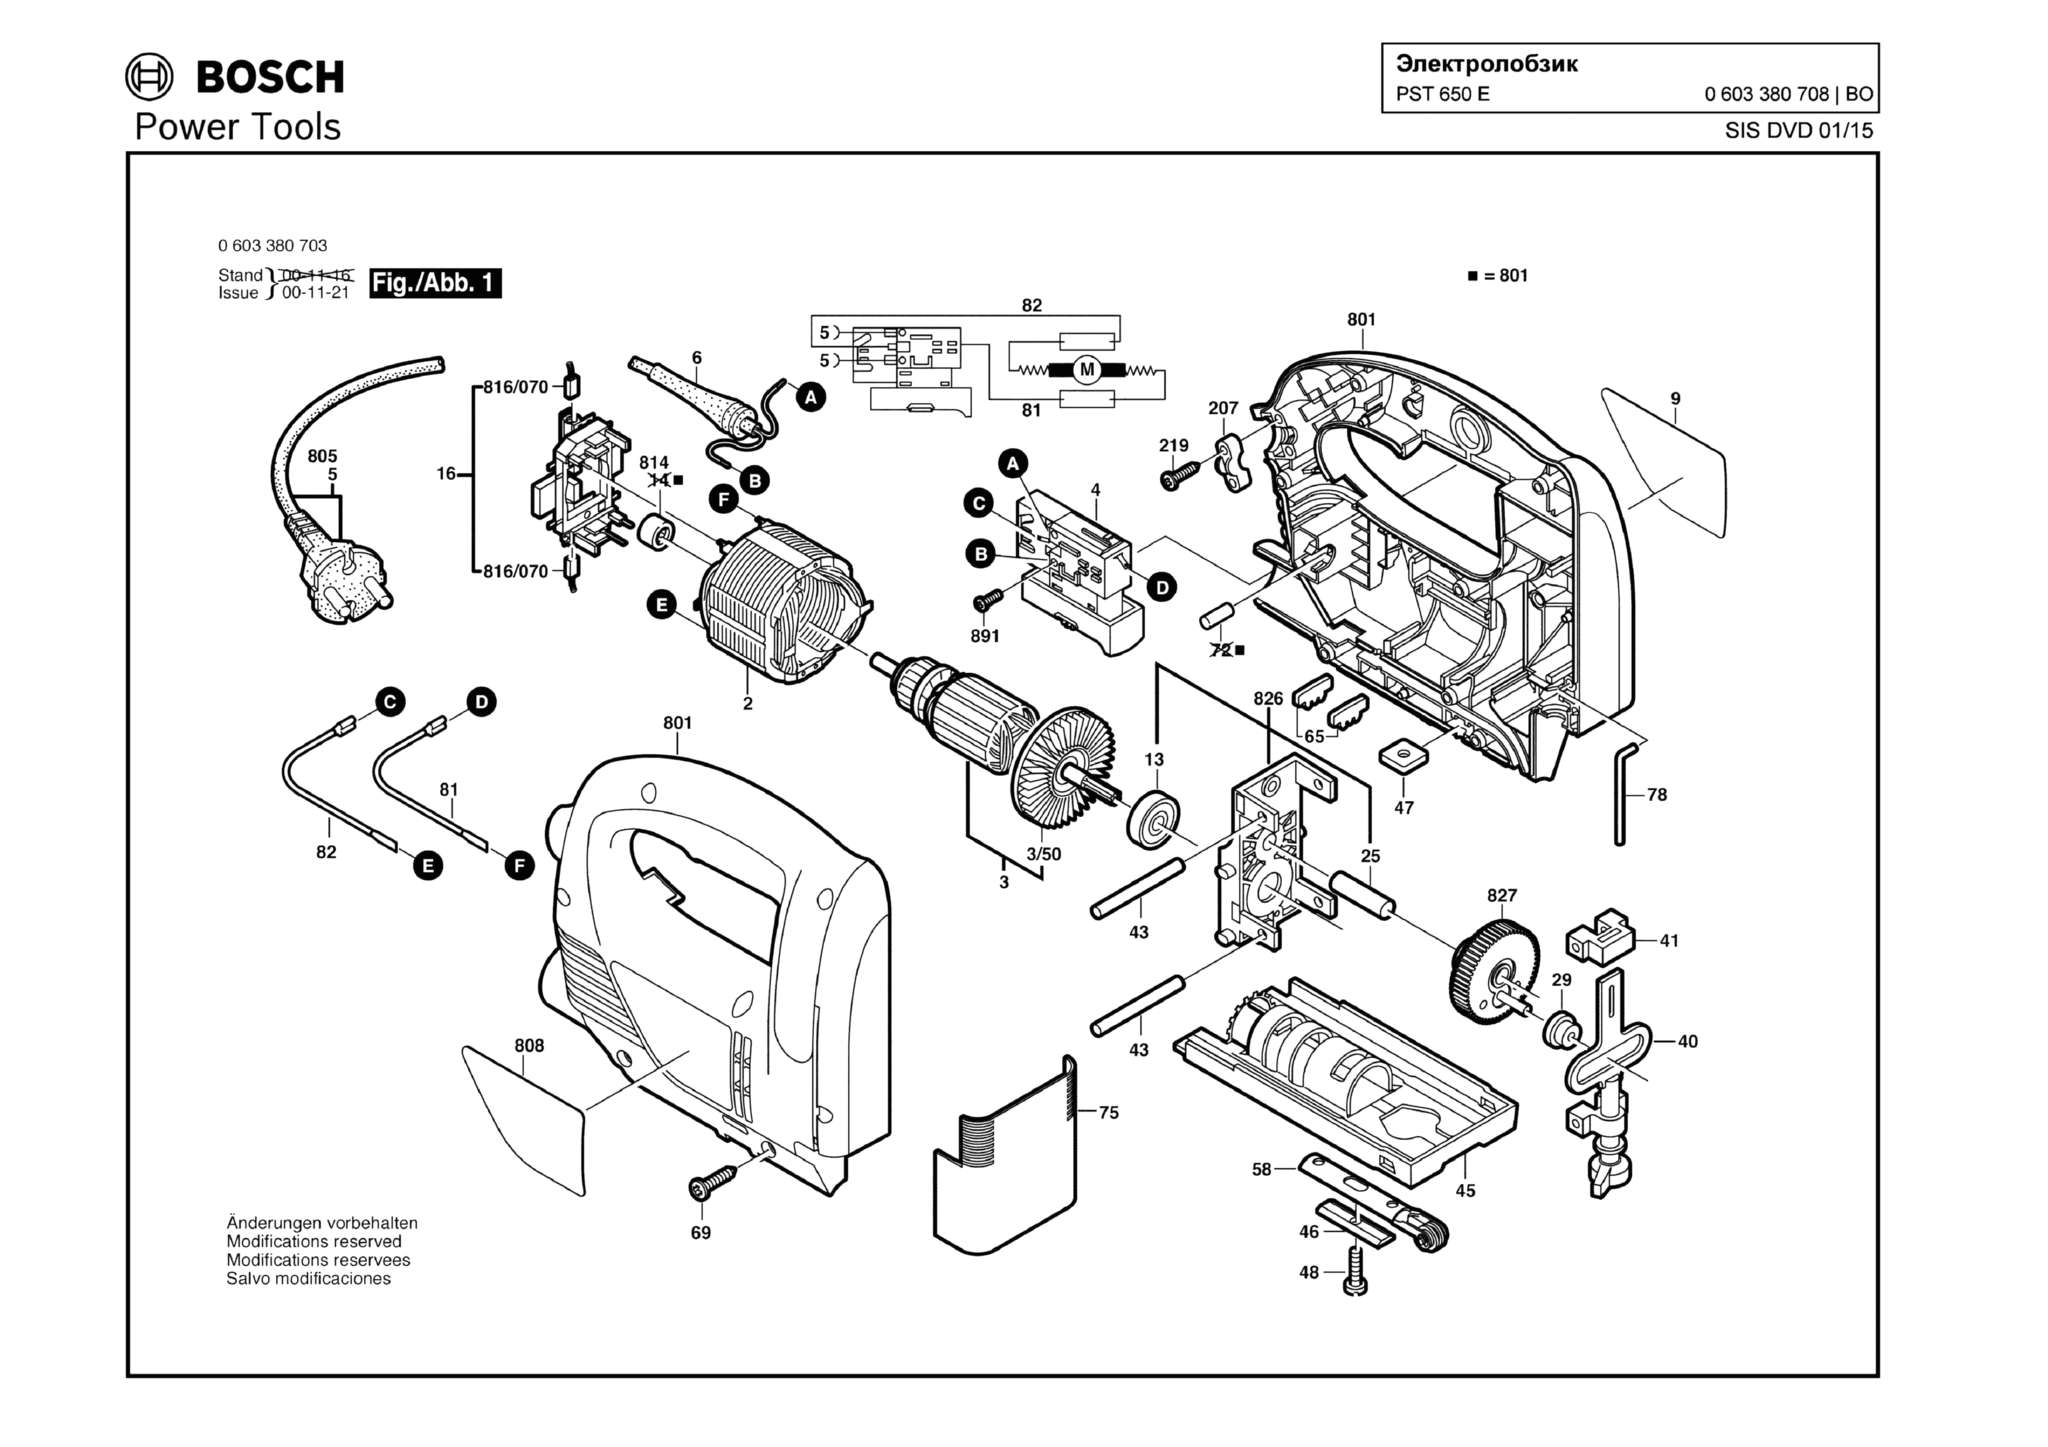 Запчасти, схема и деталировка Bosch PST 650 E (ТИП 0603380708)